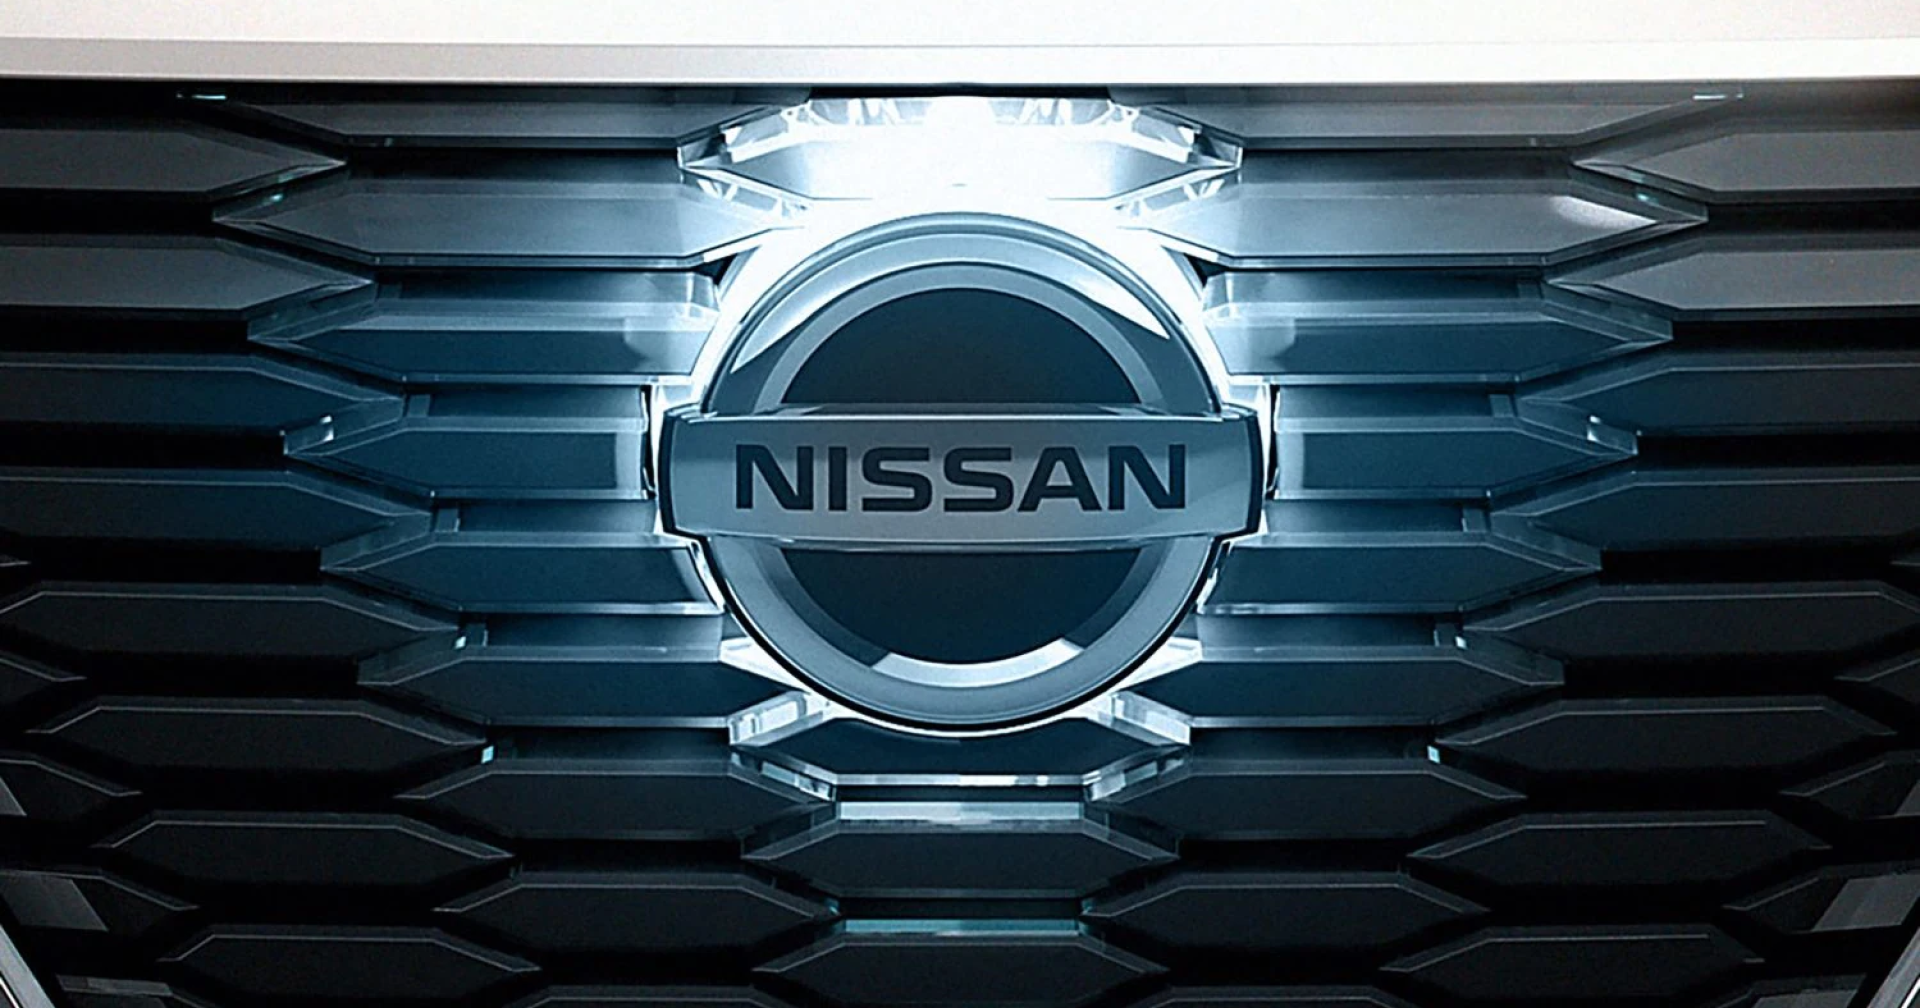 Nissan North American แจ้งเตือนลูกค้าเกือบ 18,000 รายที่ได้รับผลกระทบจากการแฮกข้อมูลส่วนบุคคล